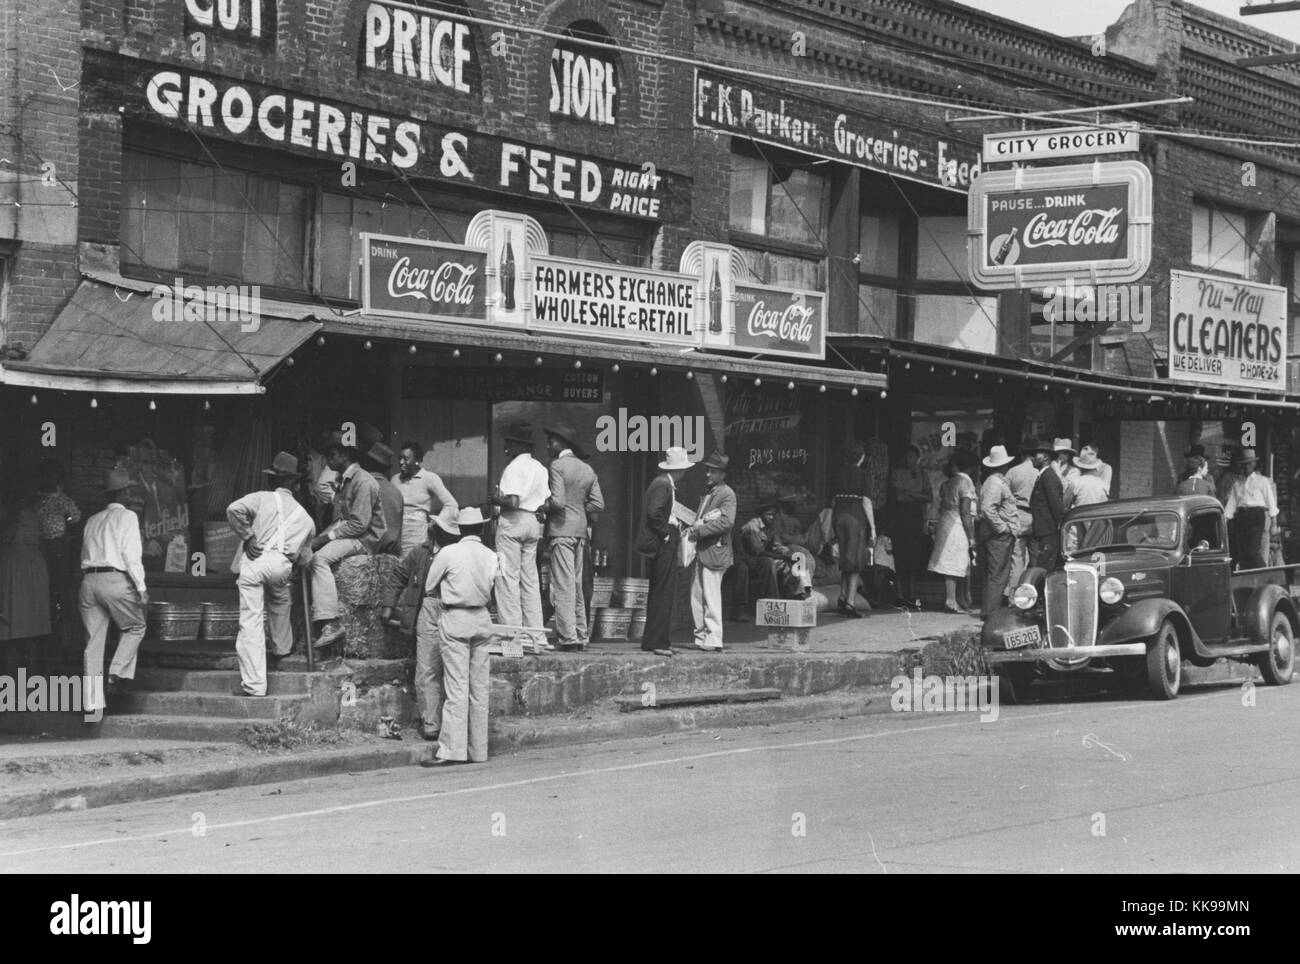 Schwarz-weiß Foto von einer Versammlung von Menschen, an einem Samstag Nachmittag, vor der Stadt unternehmen, Zeichen für ein Lebensmittelgeschäft und Reiniger können gesehen werden, San Agustino, Texas, 1939. Von der New York Public Library. Stockfoto